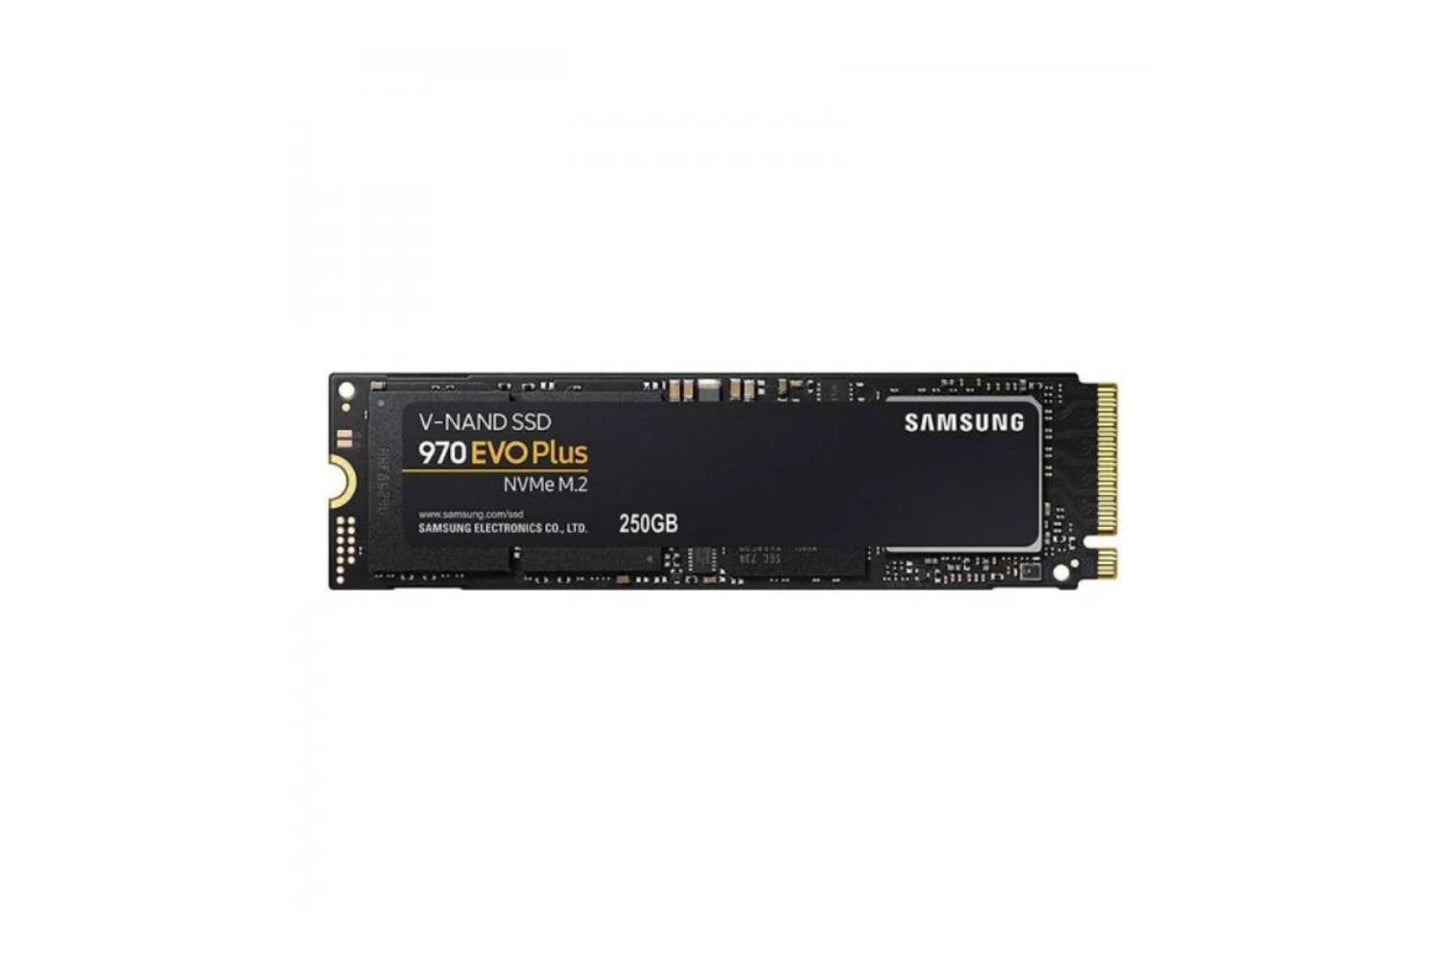 SAMSUNG 970 EVO PLUS NVME M.2 250GB SSD